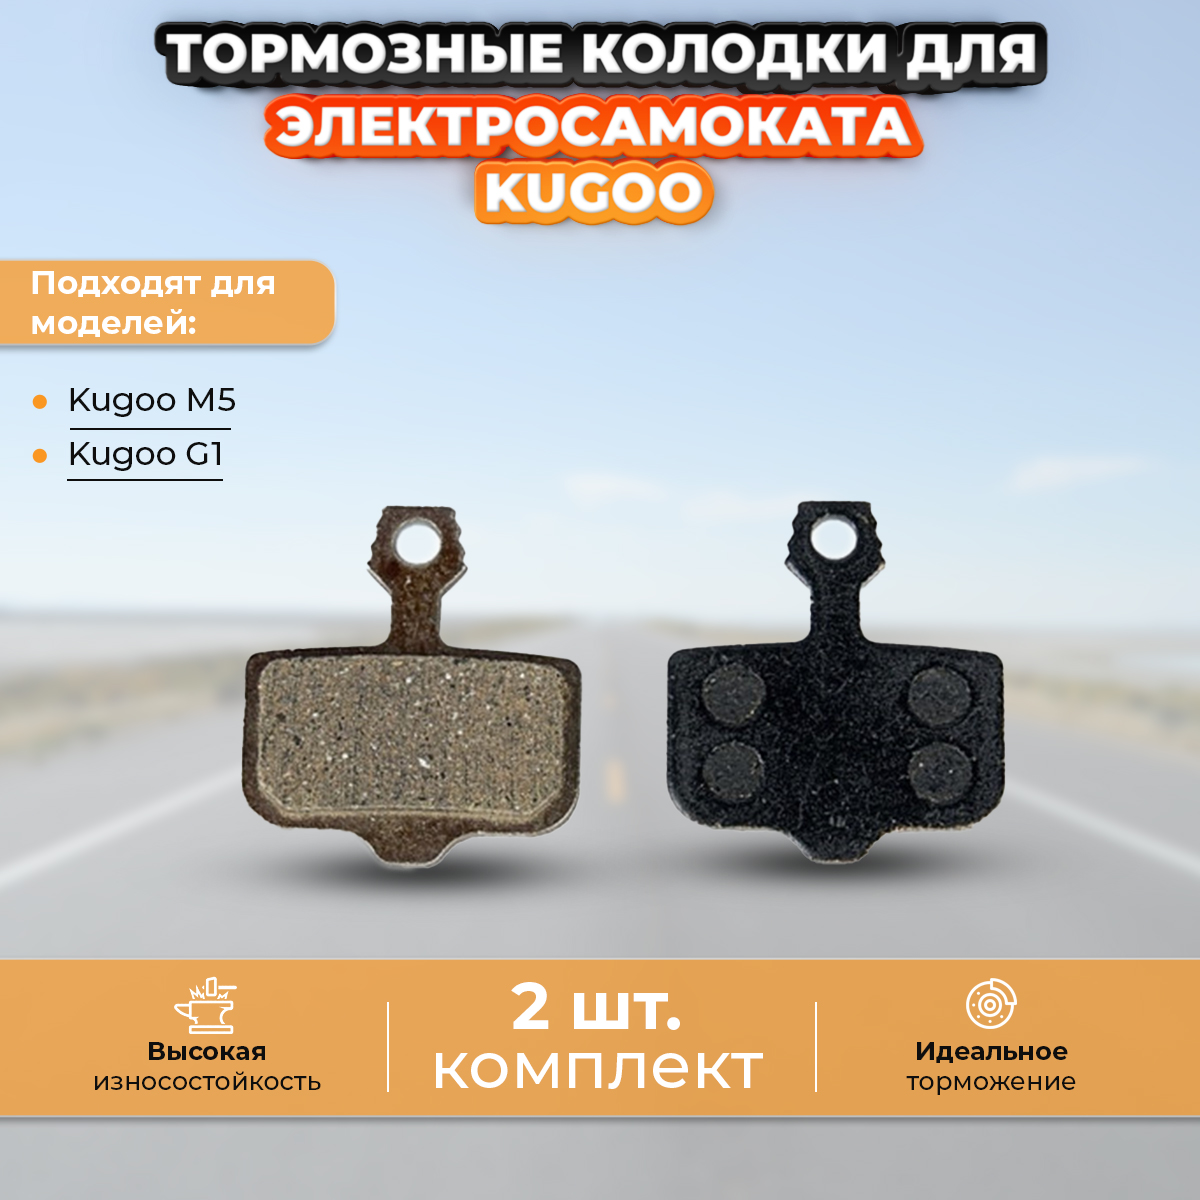 Тормозные колодки KugooKirin для электросамоката Kugoo M5